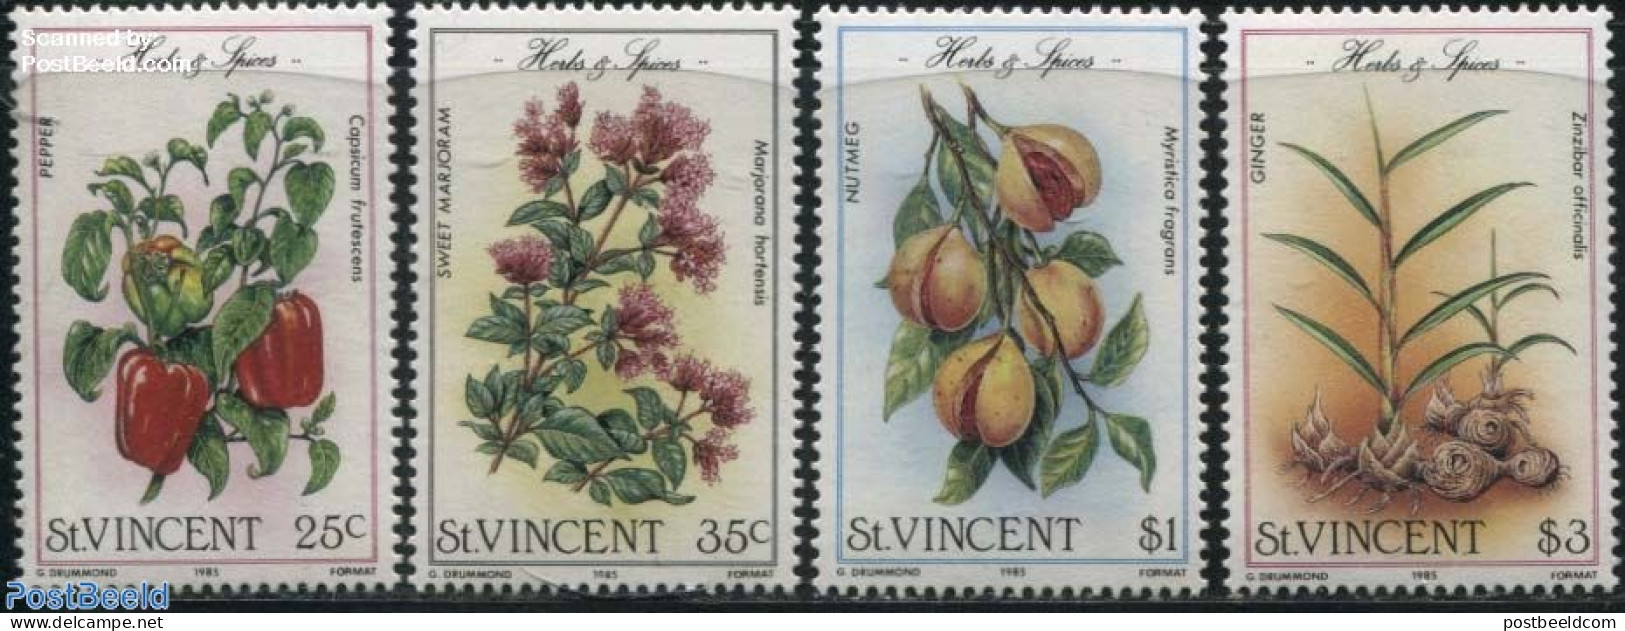 Saint Vincent 1985 Flowers & Fruits 4v, Mint NH, Nature - Flowers & Plants - Fruit - Frutta